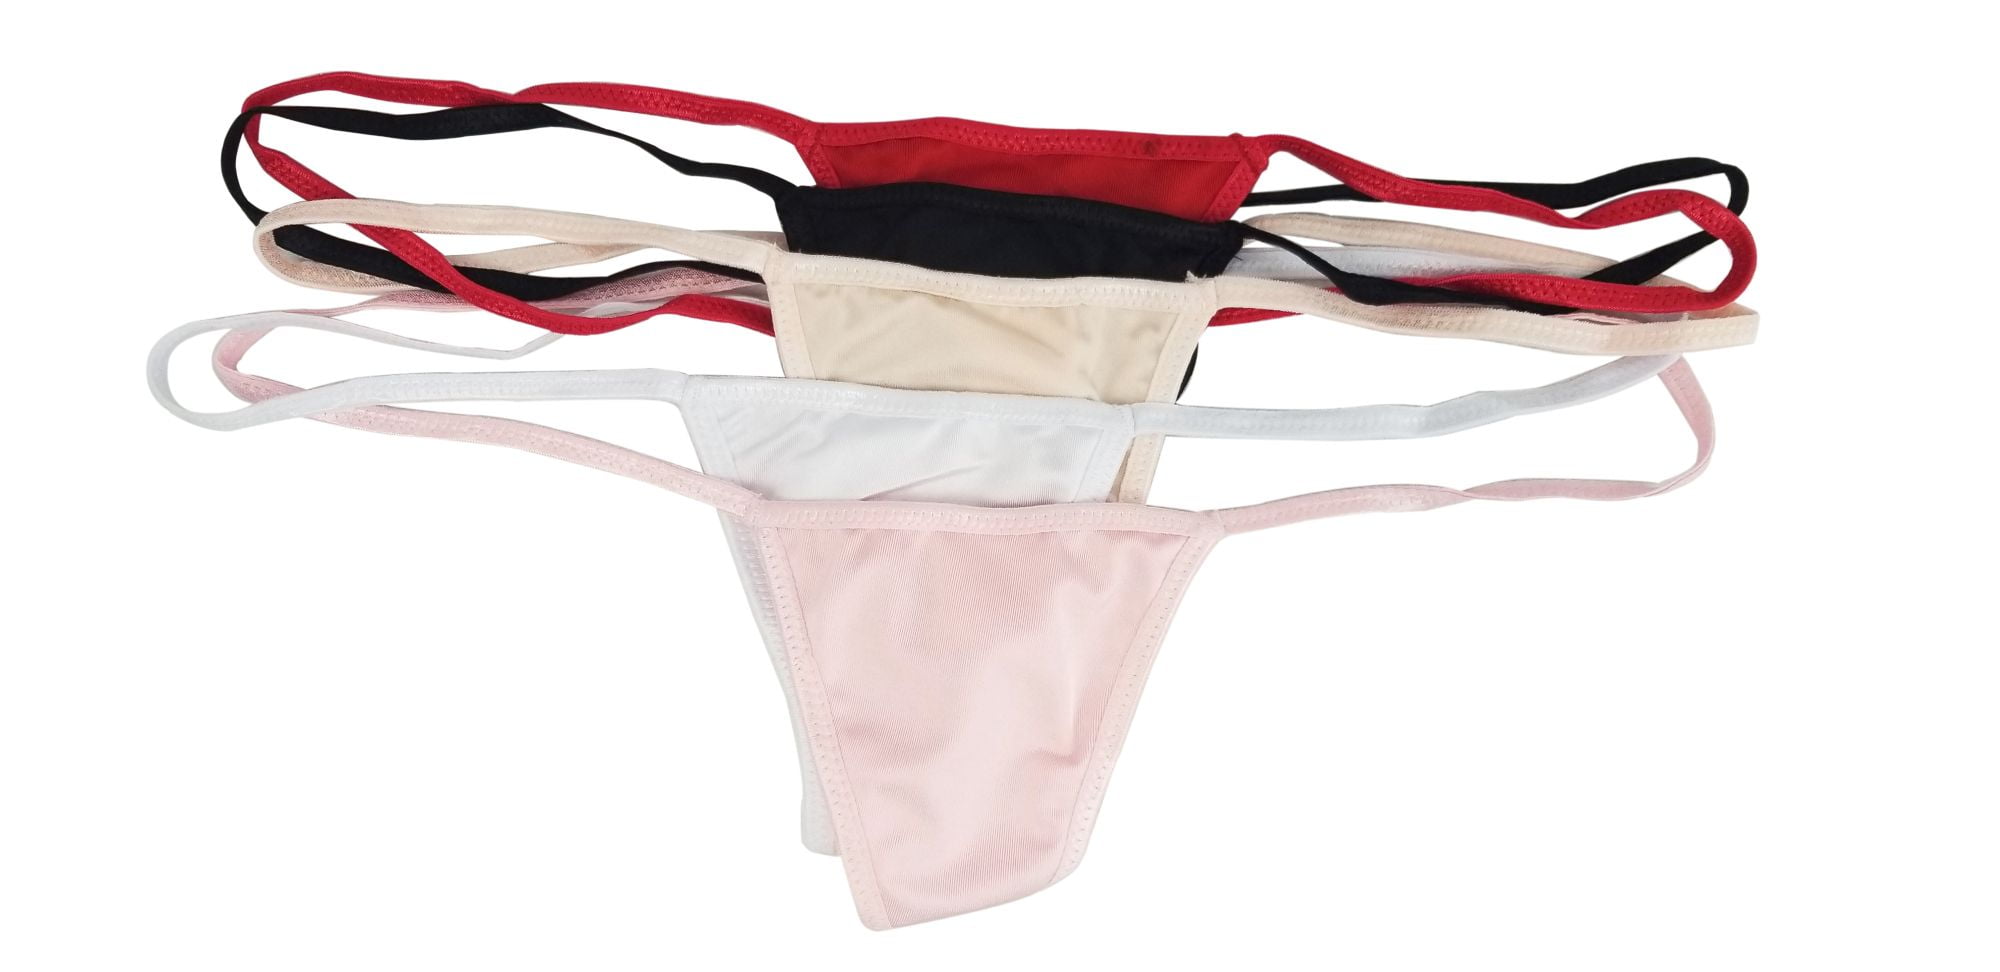 Women Ladies Wet Look Underwear G-string Crotch Panties Knickers Thongs Lingerie